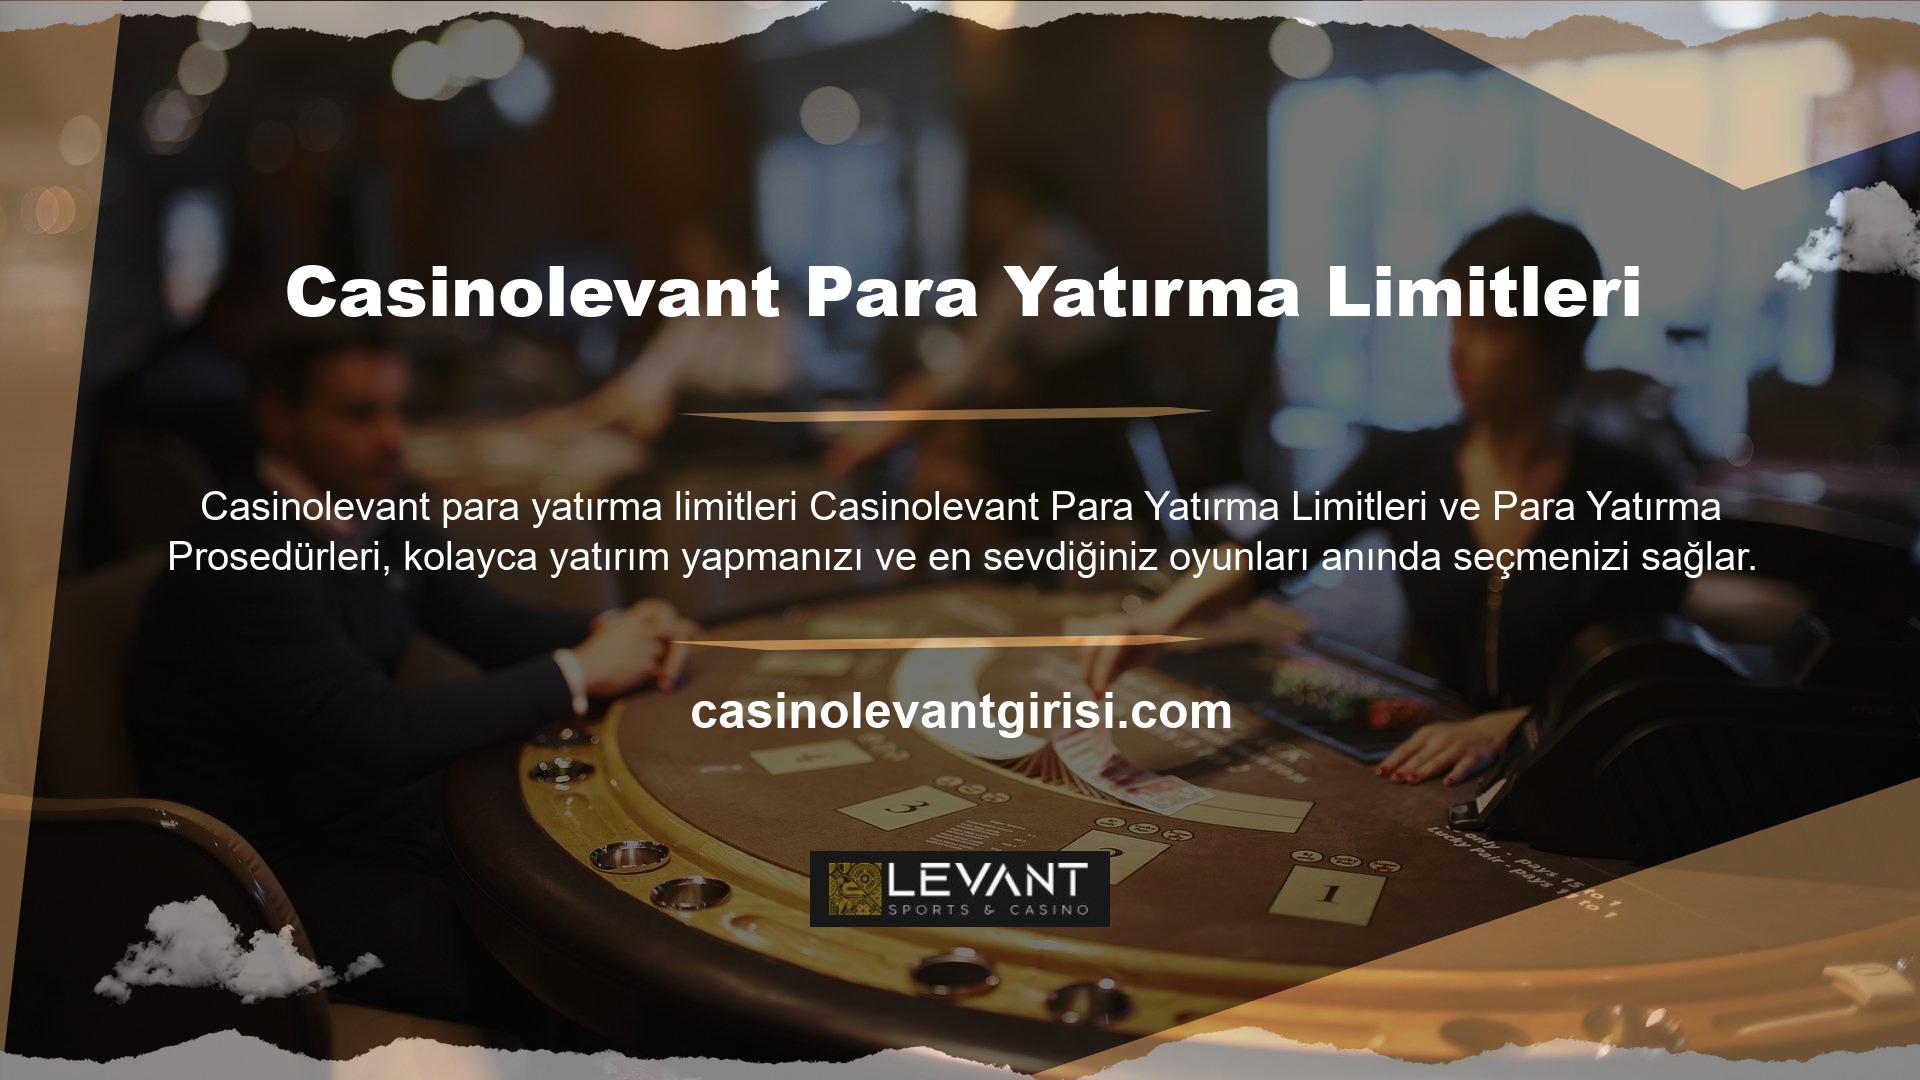 Oyunlardan para kazanan diğer bahis siteleri gibi Casinolevant bahis sitesi de oyunlara yatırım yapma yolları sunmaktadır